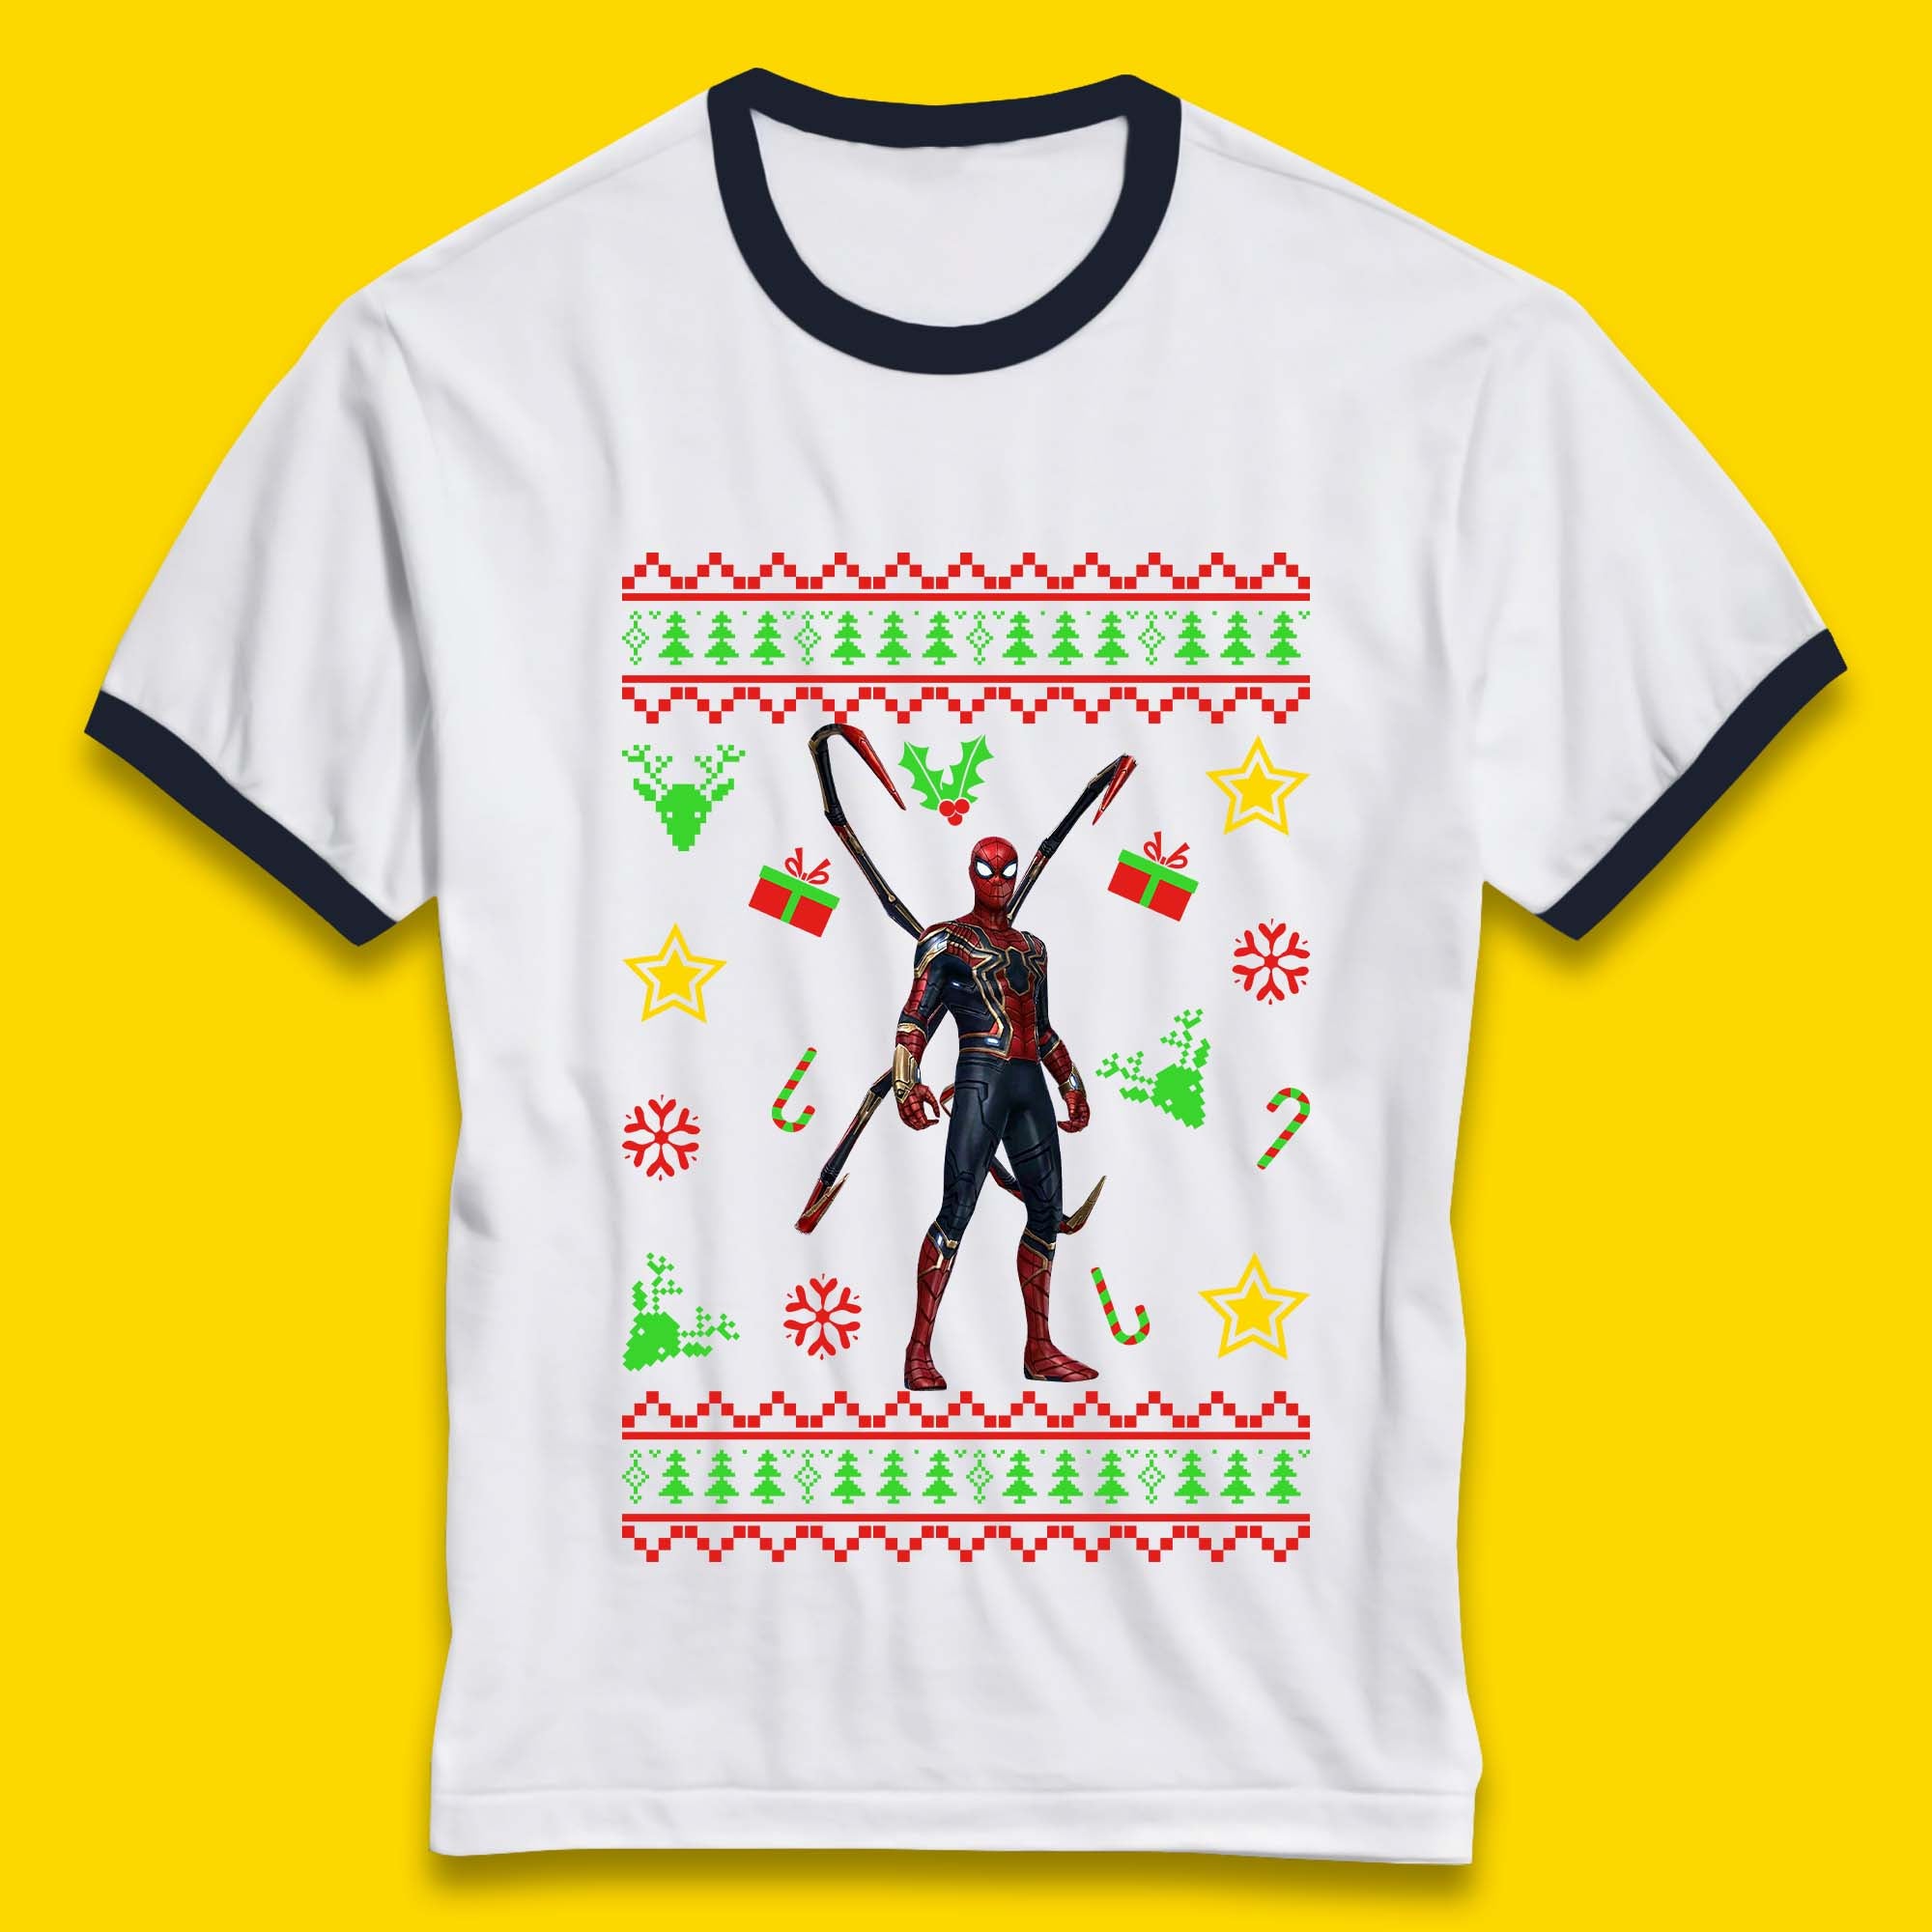 Spiderman Christmas Ringer T-Shirt